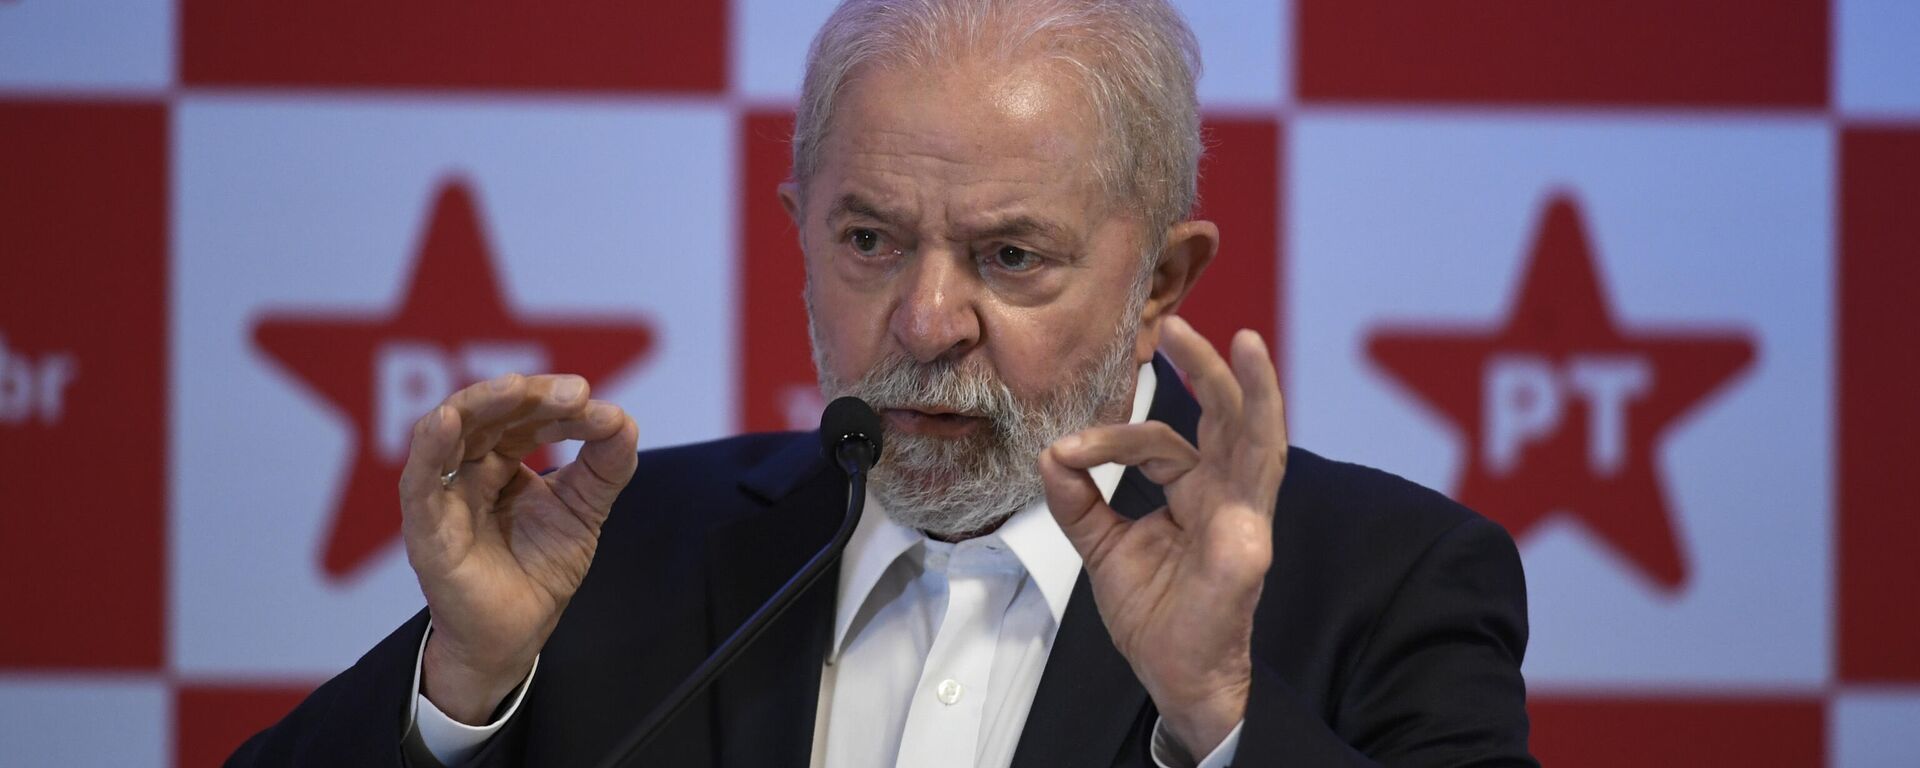 O ex-presidente Luiz Inácio Lula da Silva (PT) durante coletiva de imprensa realizada em Brasília, 8 de outubro de 2021  - Sputnik Brasil, 1920, 19.11.2021